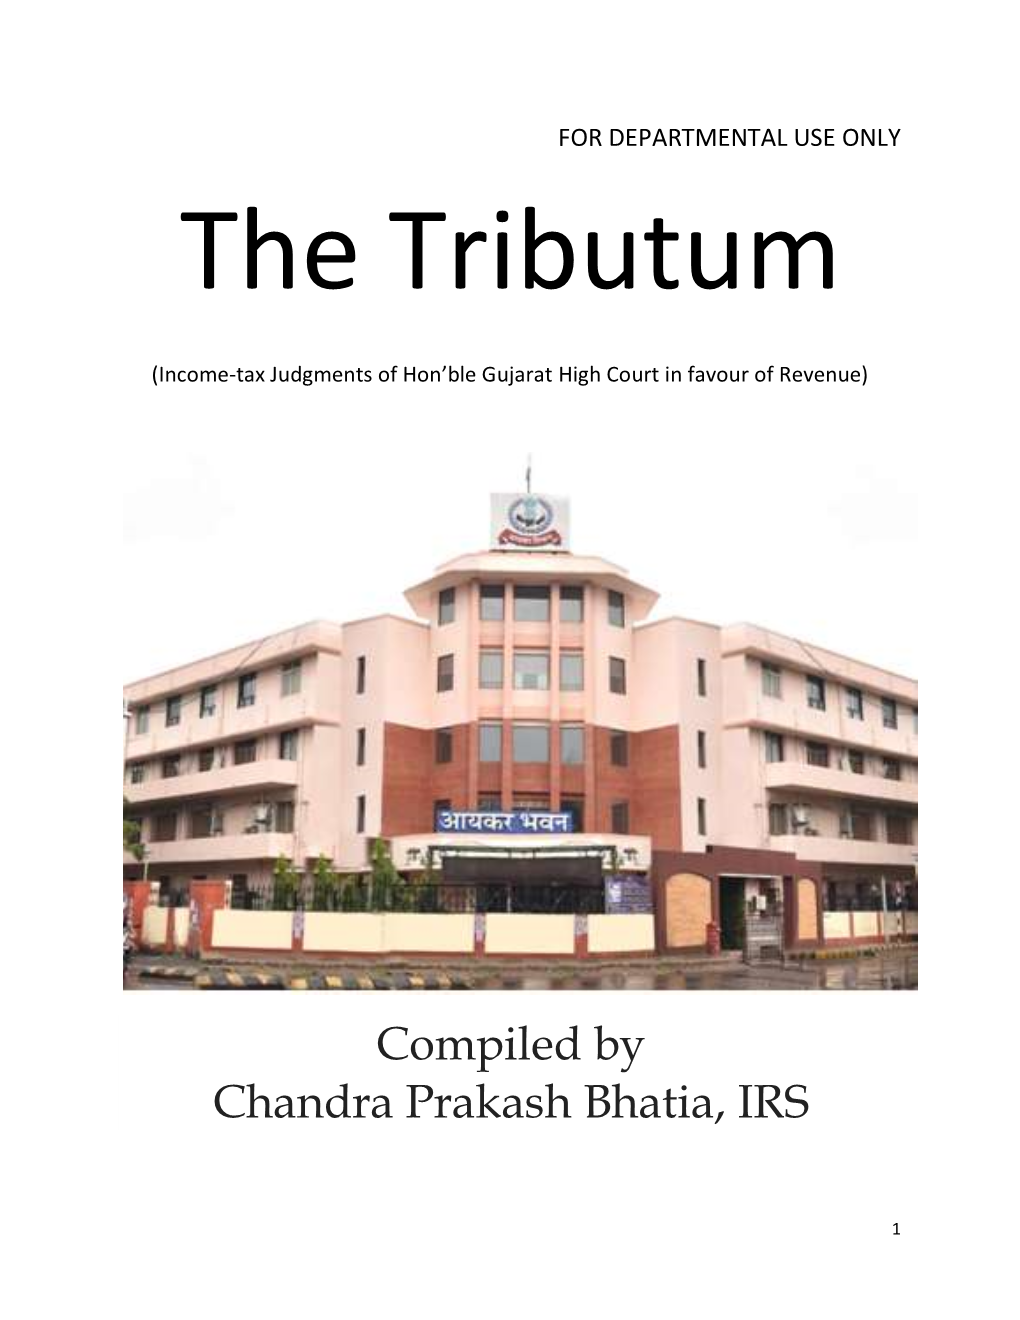 Compiled by Chandra Prakash Bhatia, IRS